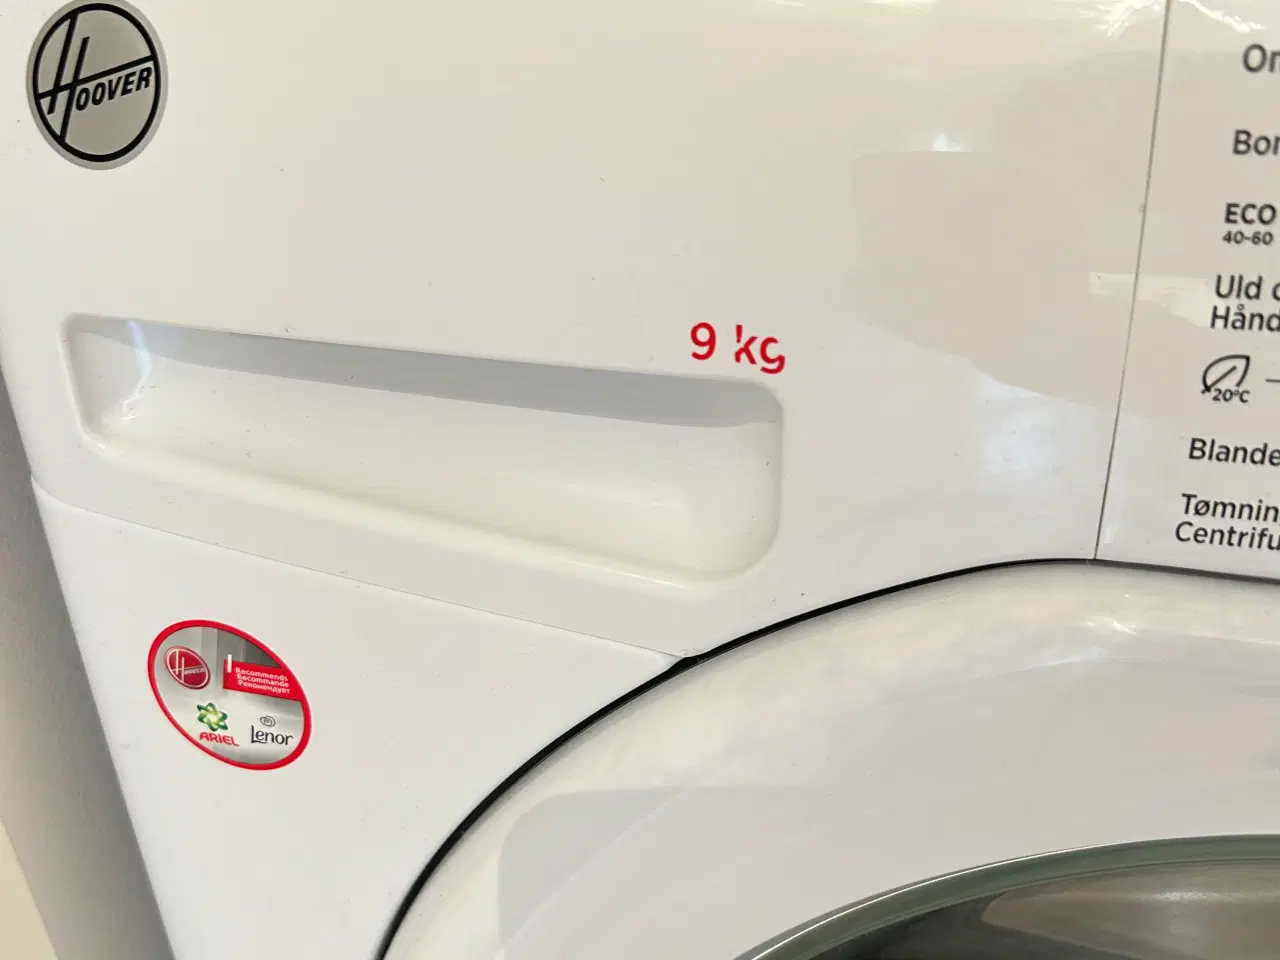 Billede 2 - Hoover vaskemaskine - Hvid